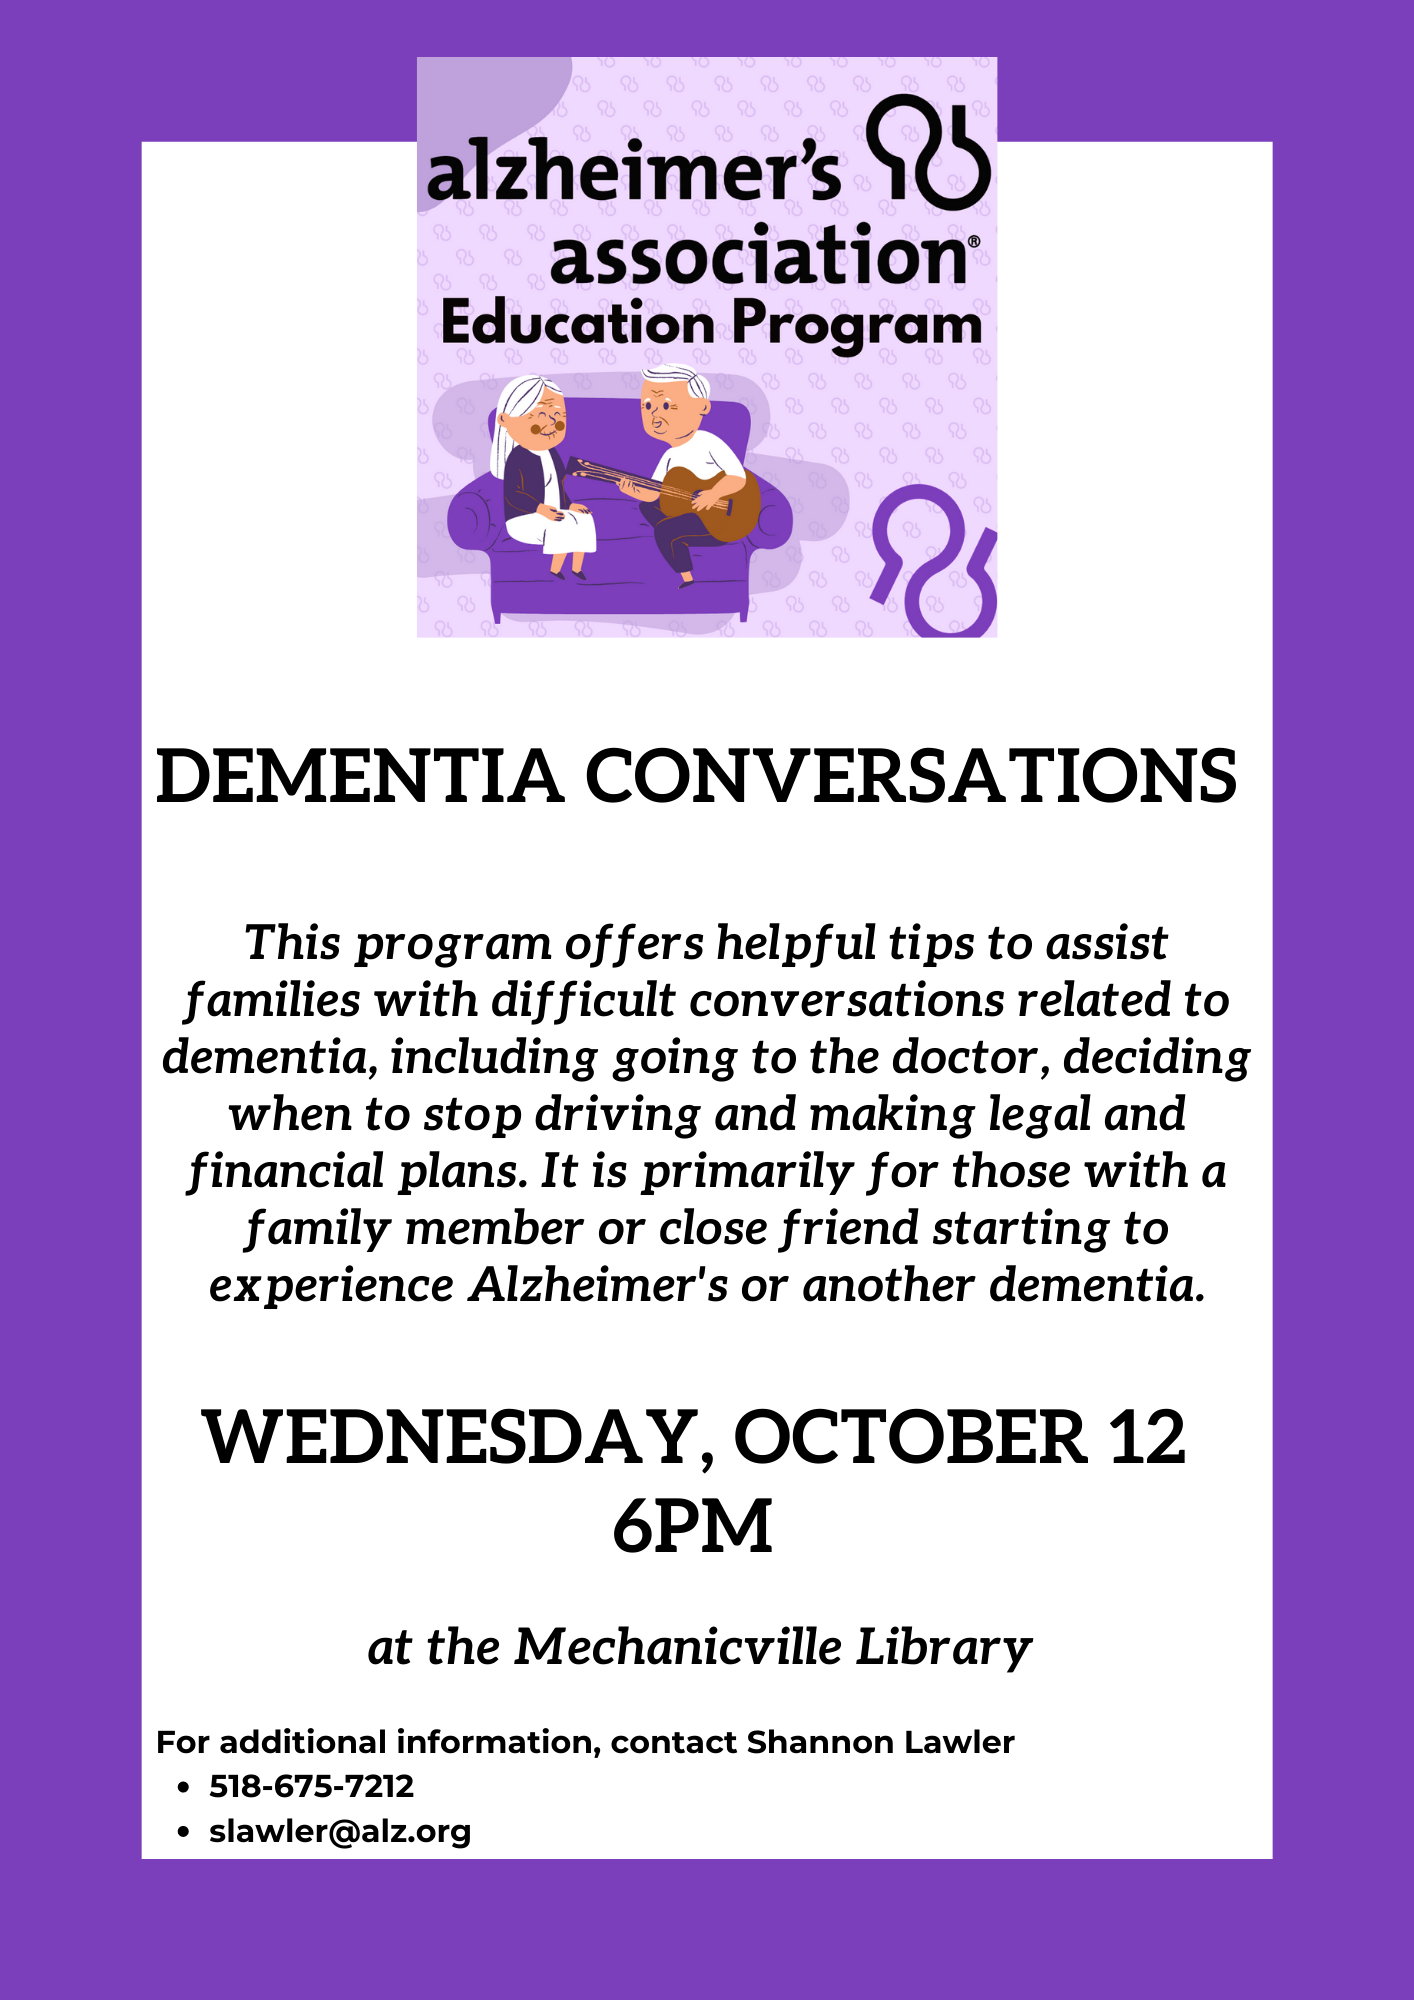 Dementia Conversations: A Program by the Alzheimer's Association